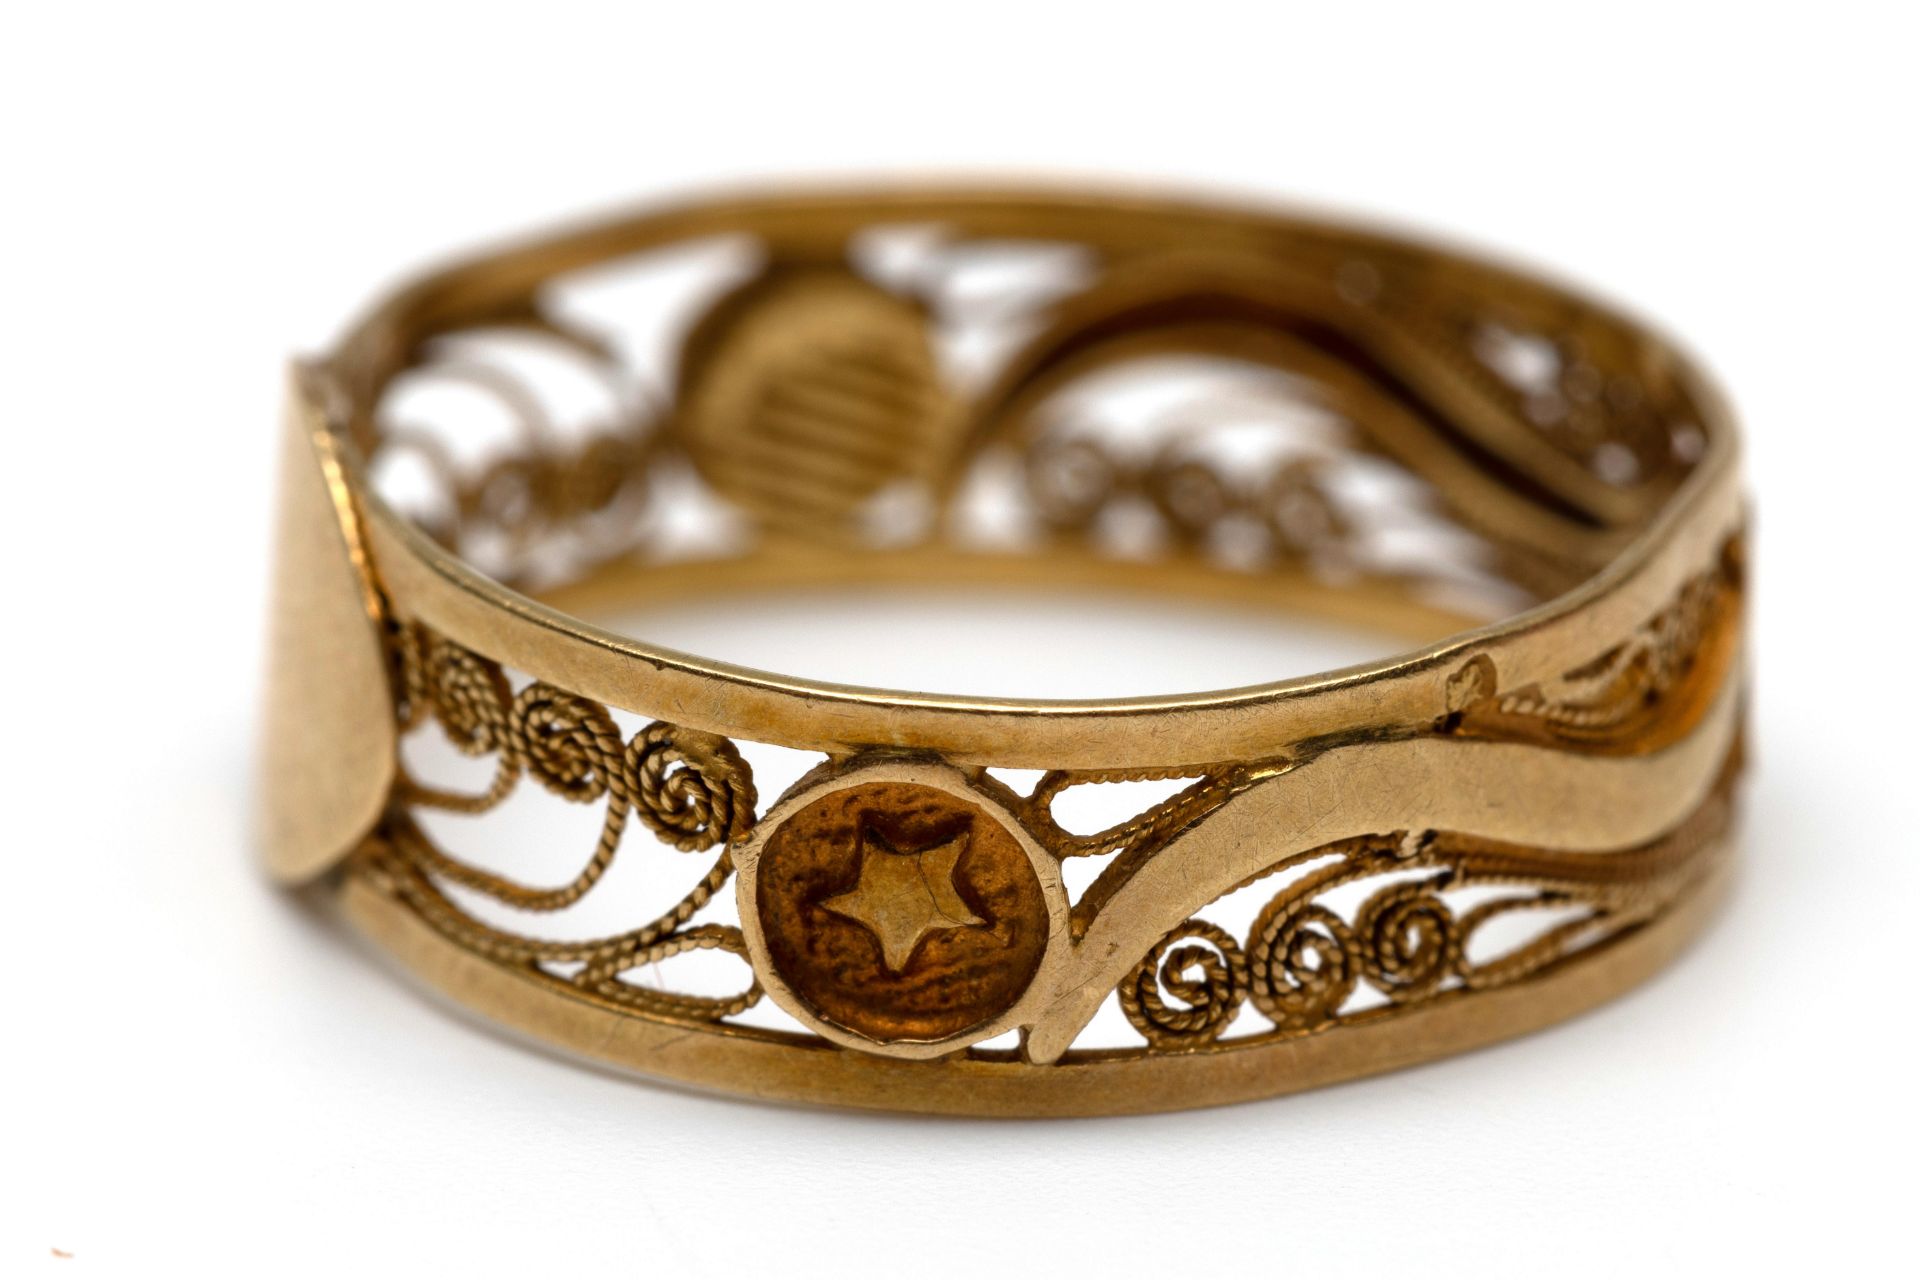 18 kt. Gouden filigrain ring, 19e eeuw. - Bild 2 aus 3